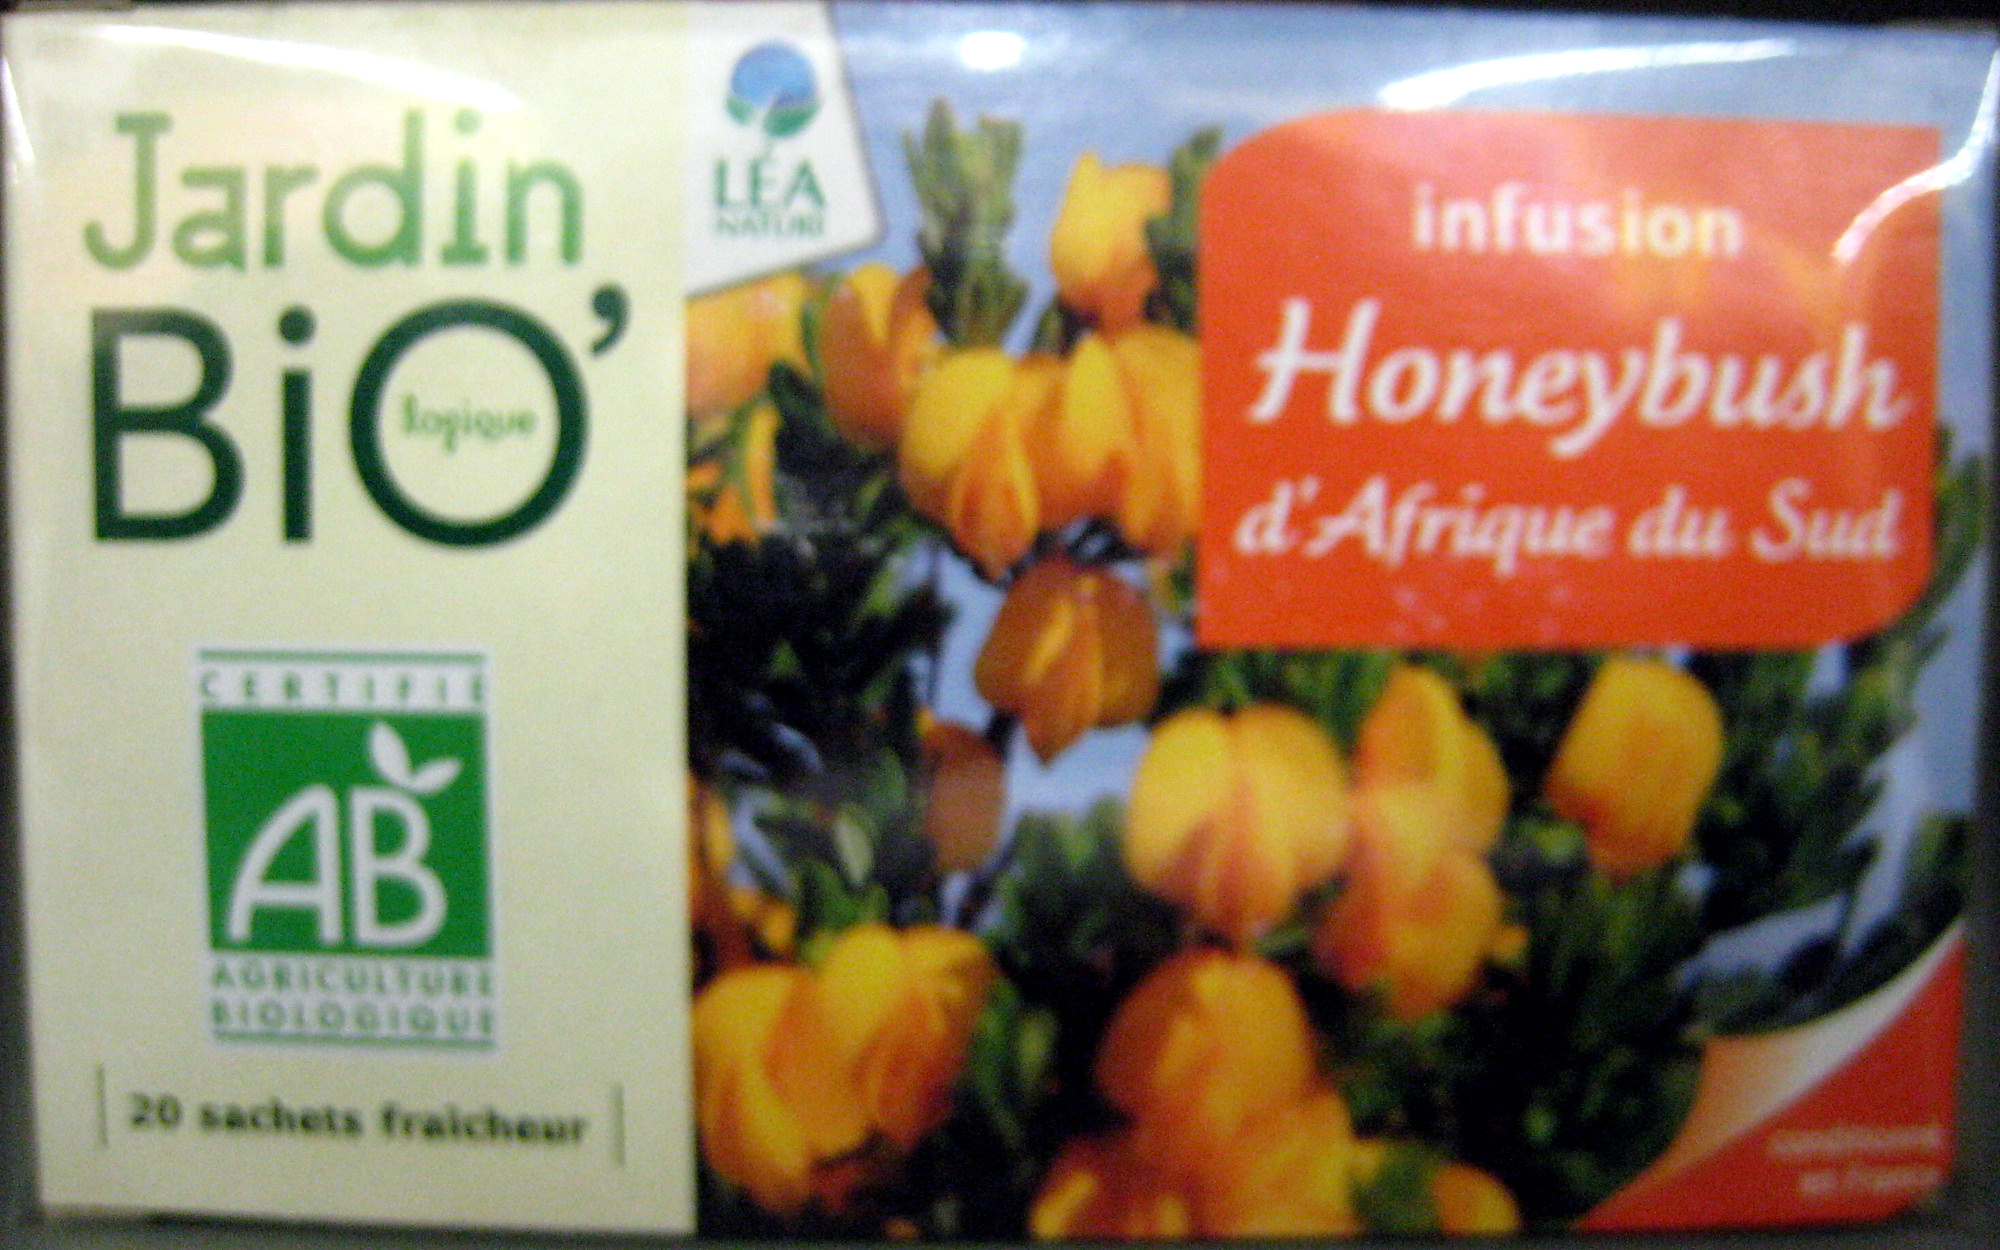 Infusion Honeybush D'afrique Du Sud Jardin Bio - 30 G (20 ... intérieur Jardin Bio Infusion